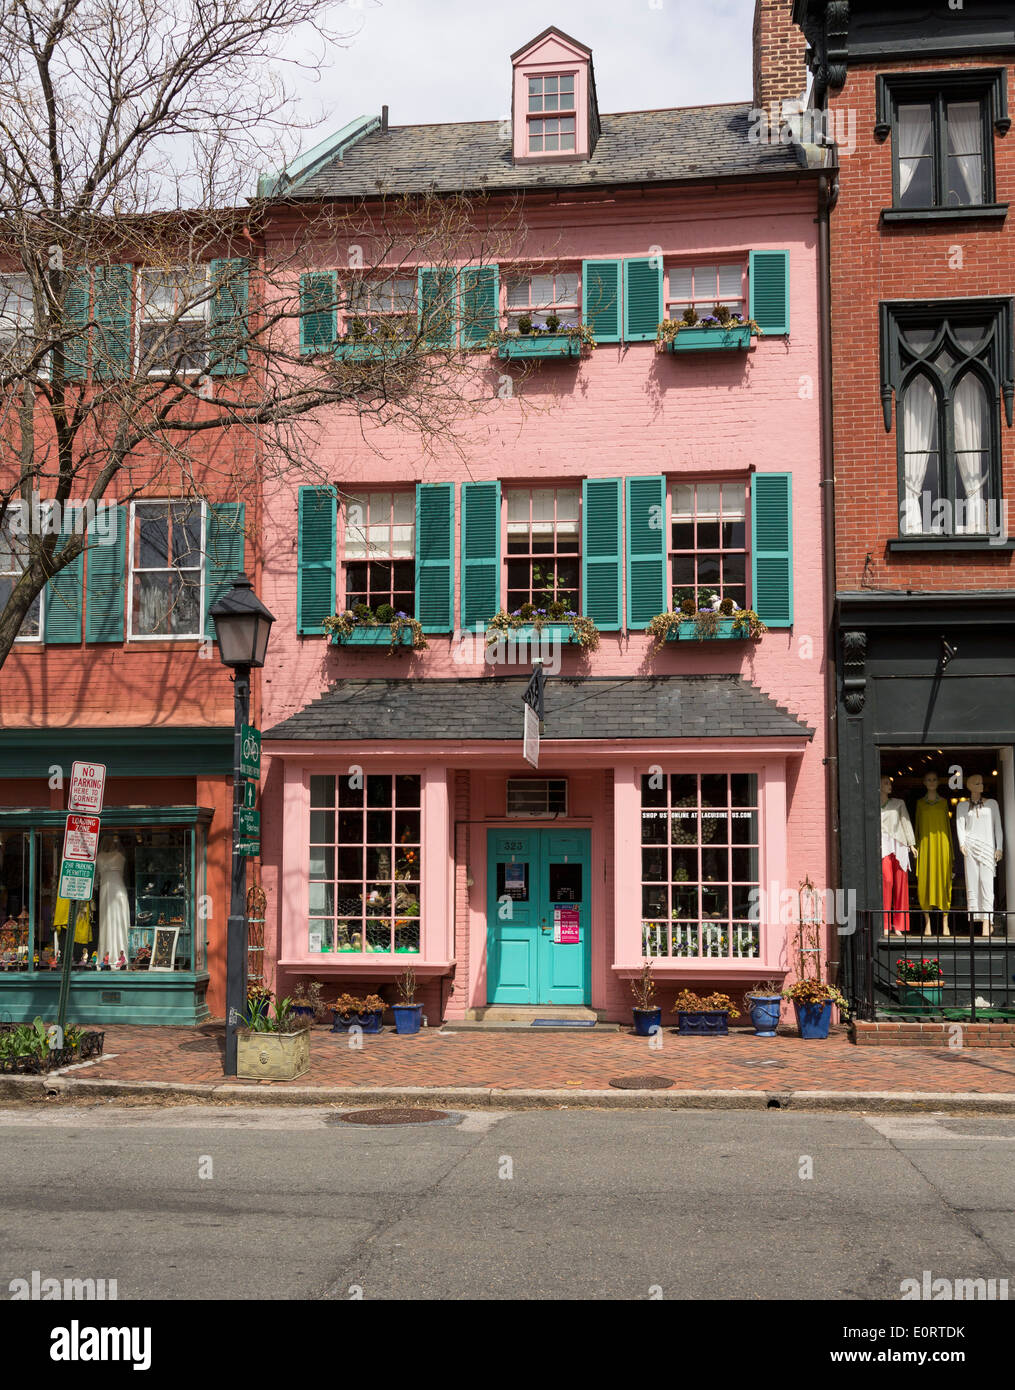 Vieille Ville, Alexandria, Virginia, USA - La Cuisine côté cuisine magasin et boutique dans un joli bâtiment rose Banque D'Images